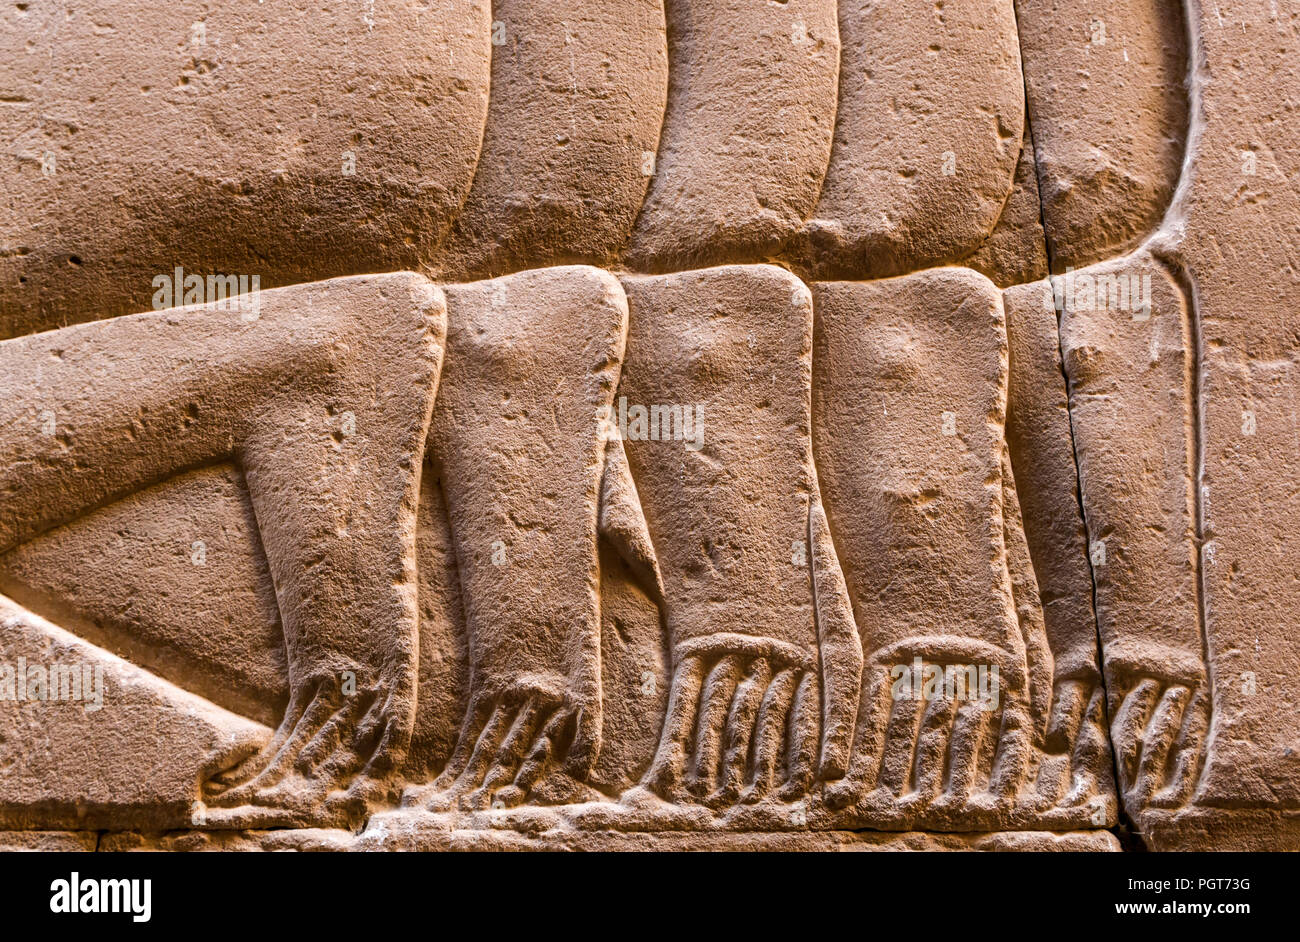 Cerrar el detalle de los pies y dedos de los pies de figuras arrodilladas en jeroglífico egipcio, el templo de Edfu, Edfu, Egipto, África Foto de stock